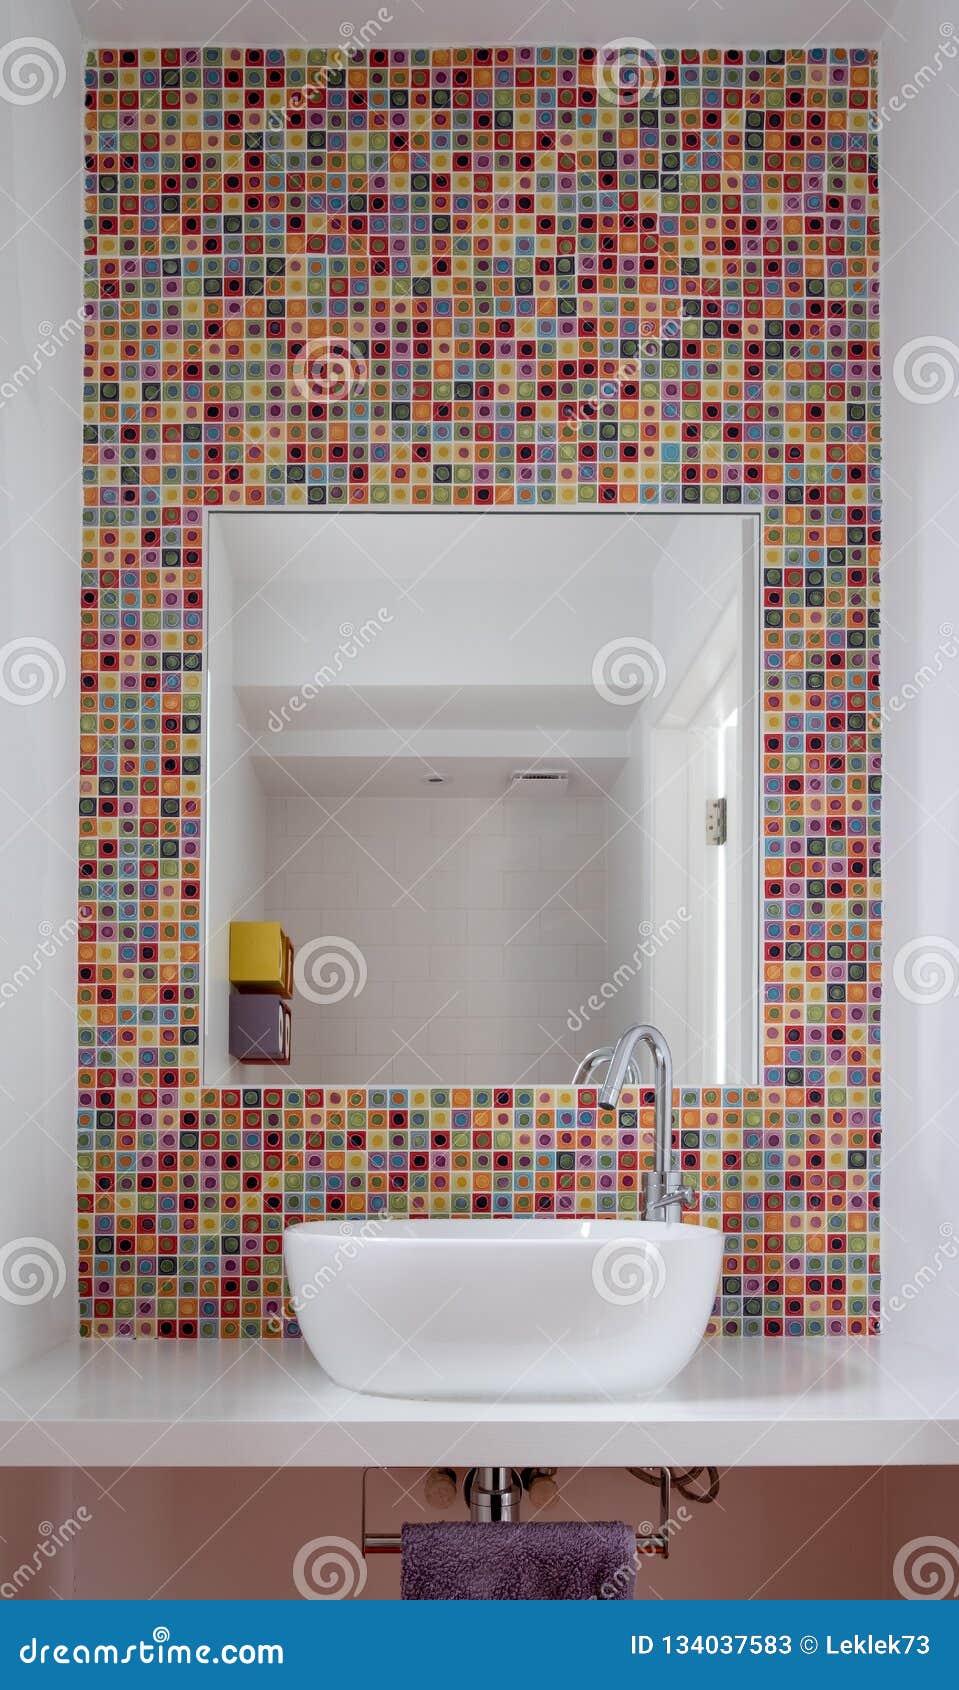 Details 300 wash basin background tiles